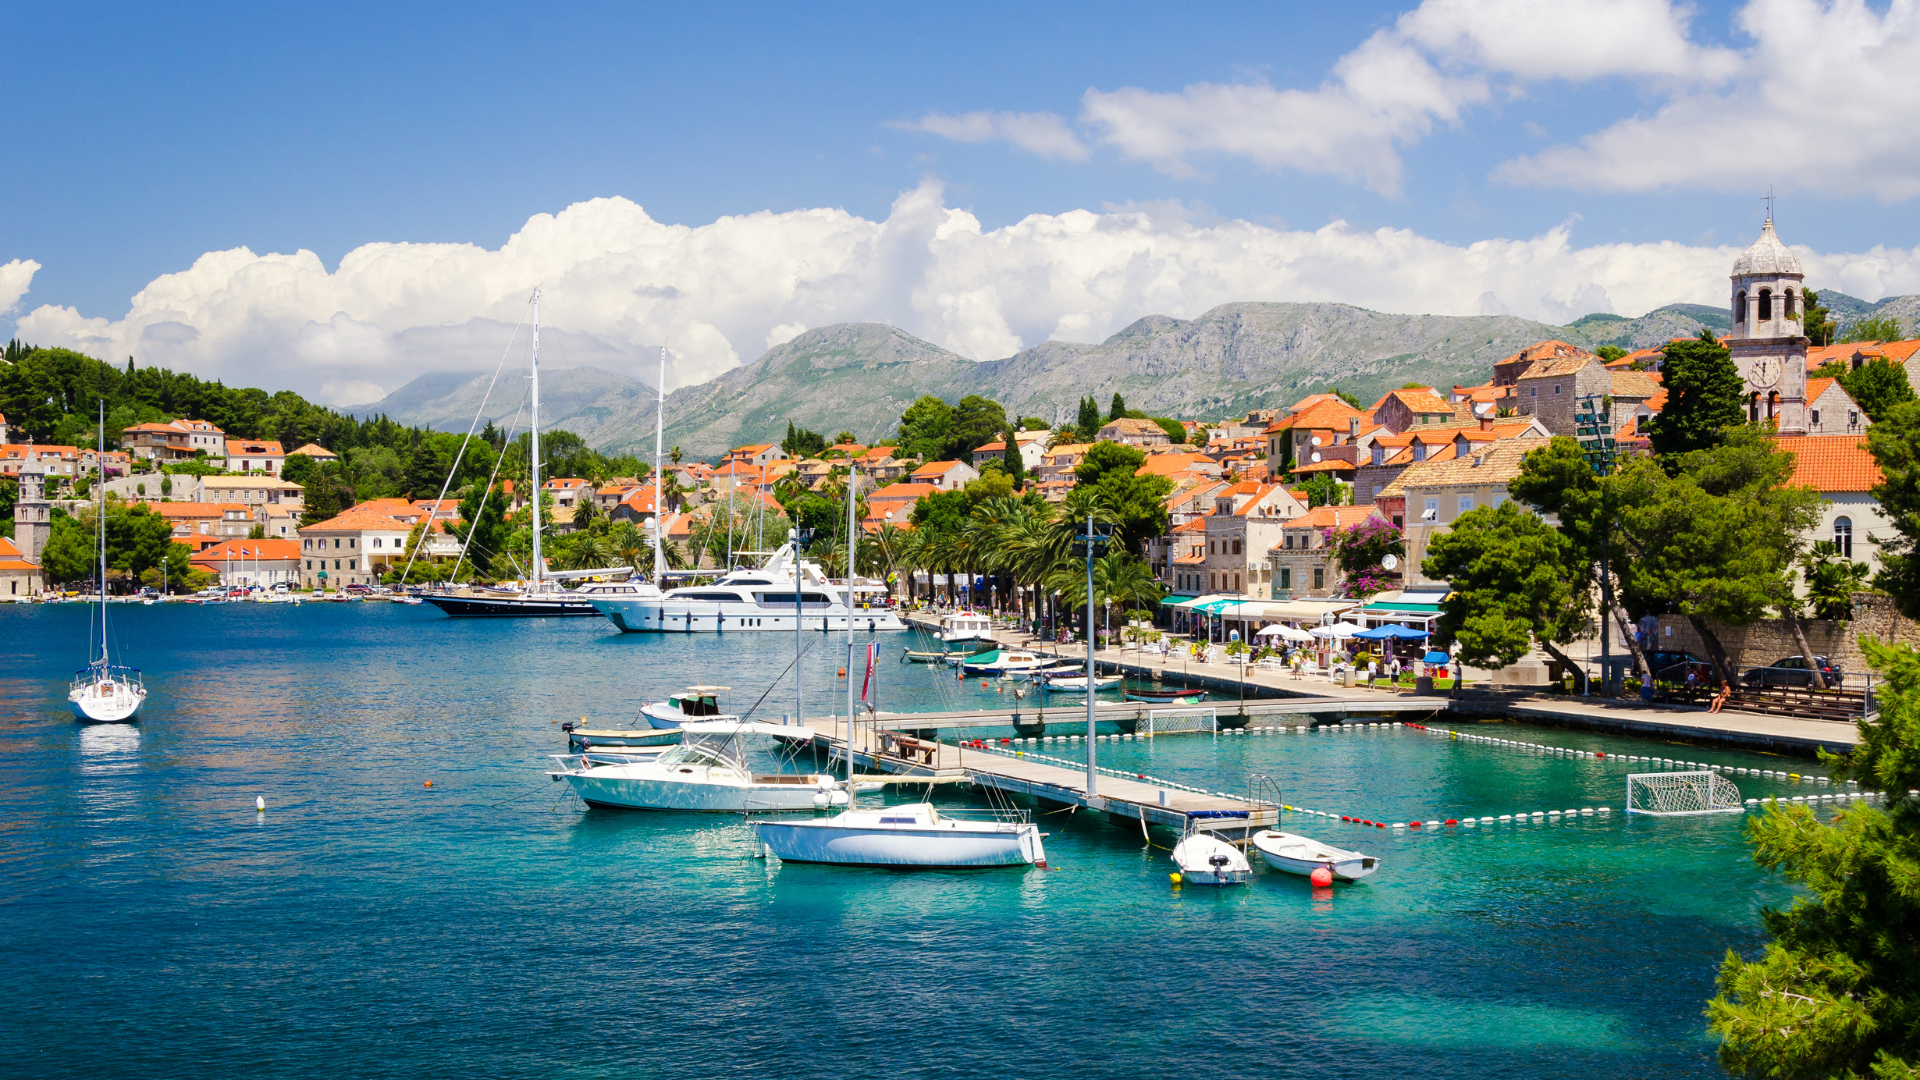 Harbor on a customized tour of Croatia